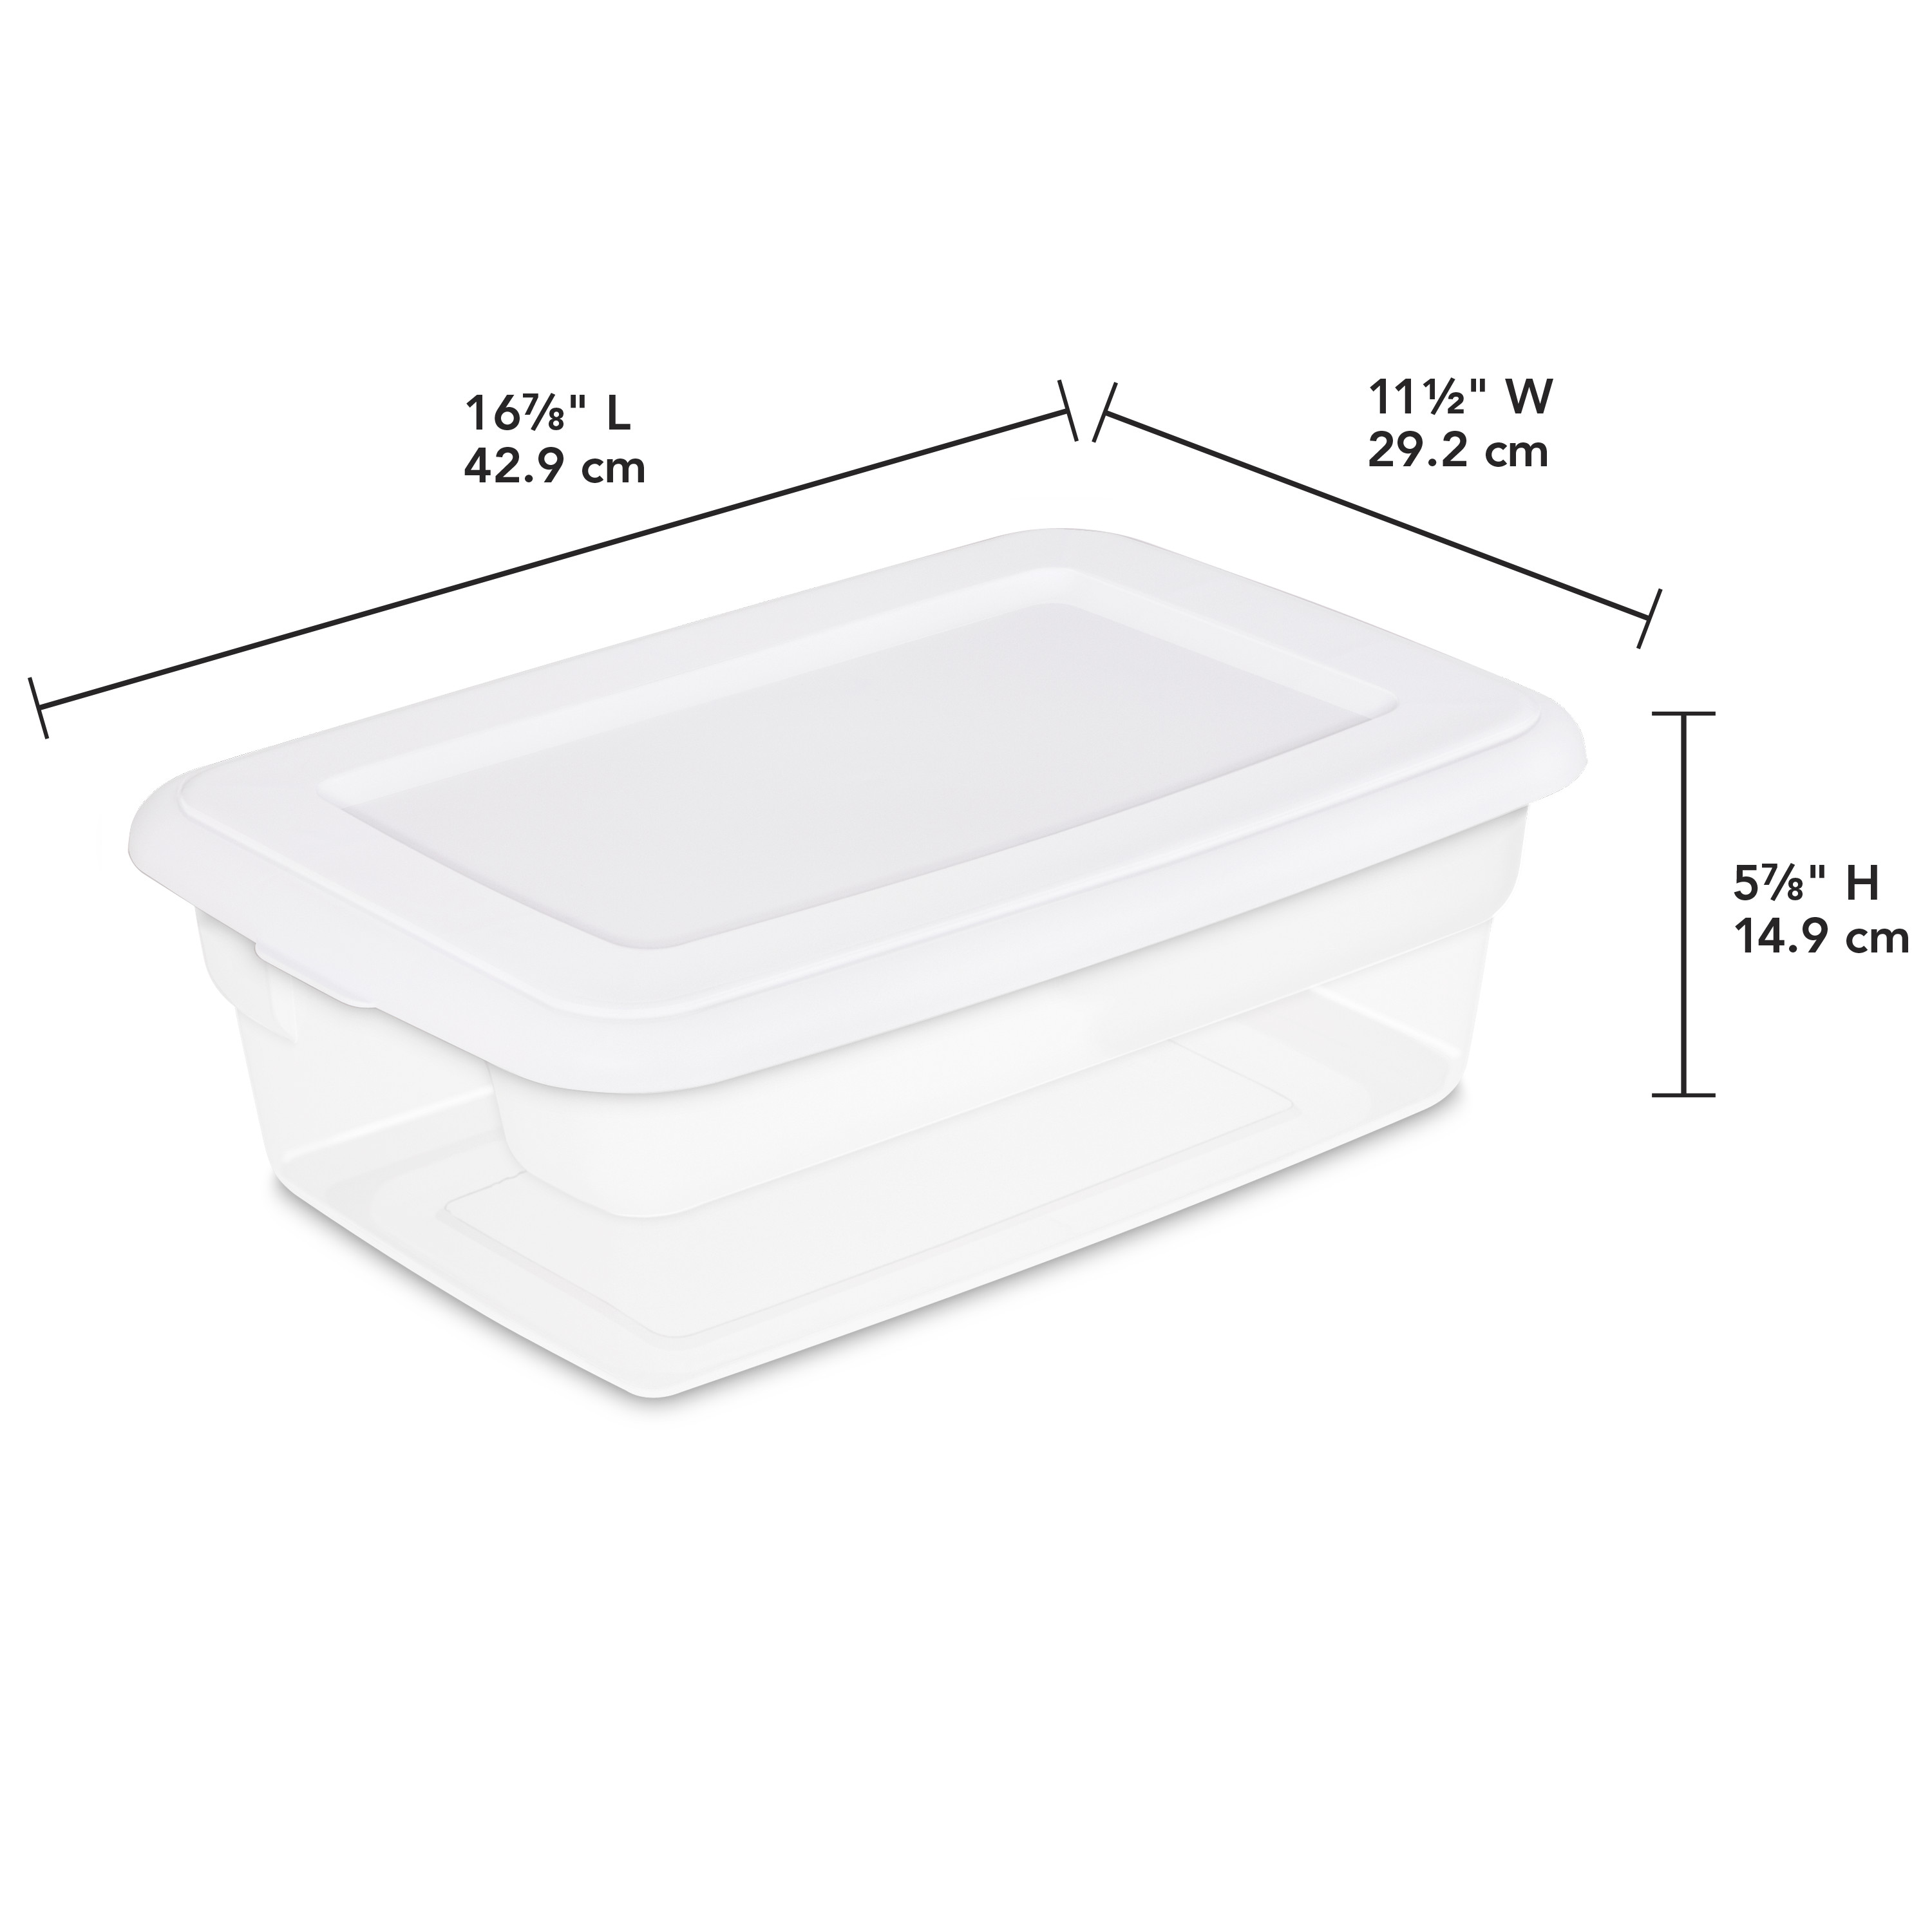 Sterilite 12 Qt. Storage Box Plastic, White - image 3 of 8